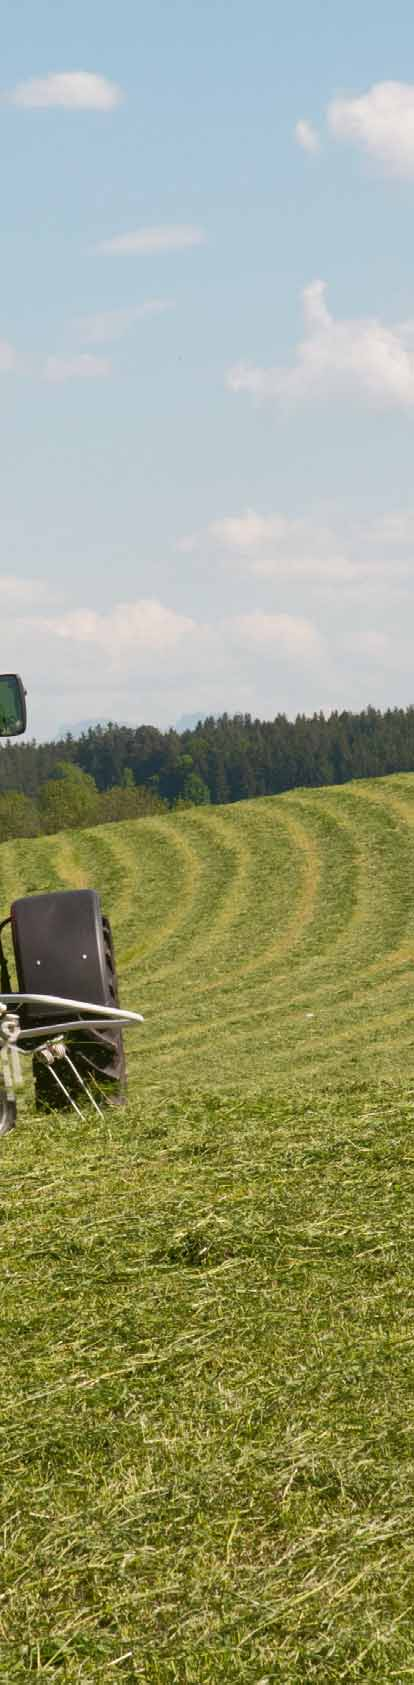 Sprederiver som begeistrer Det praktiske landbruk krever rotorvendere til store arealer.